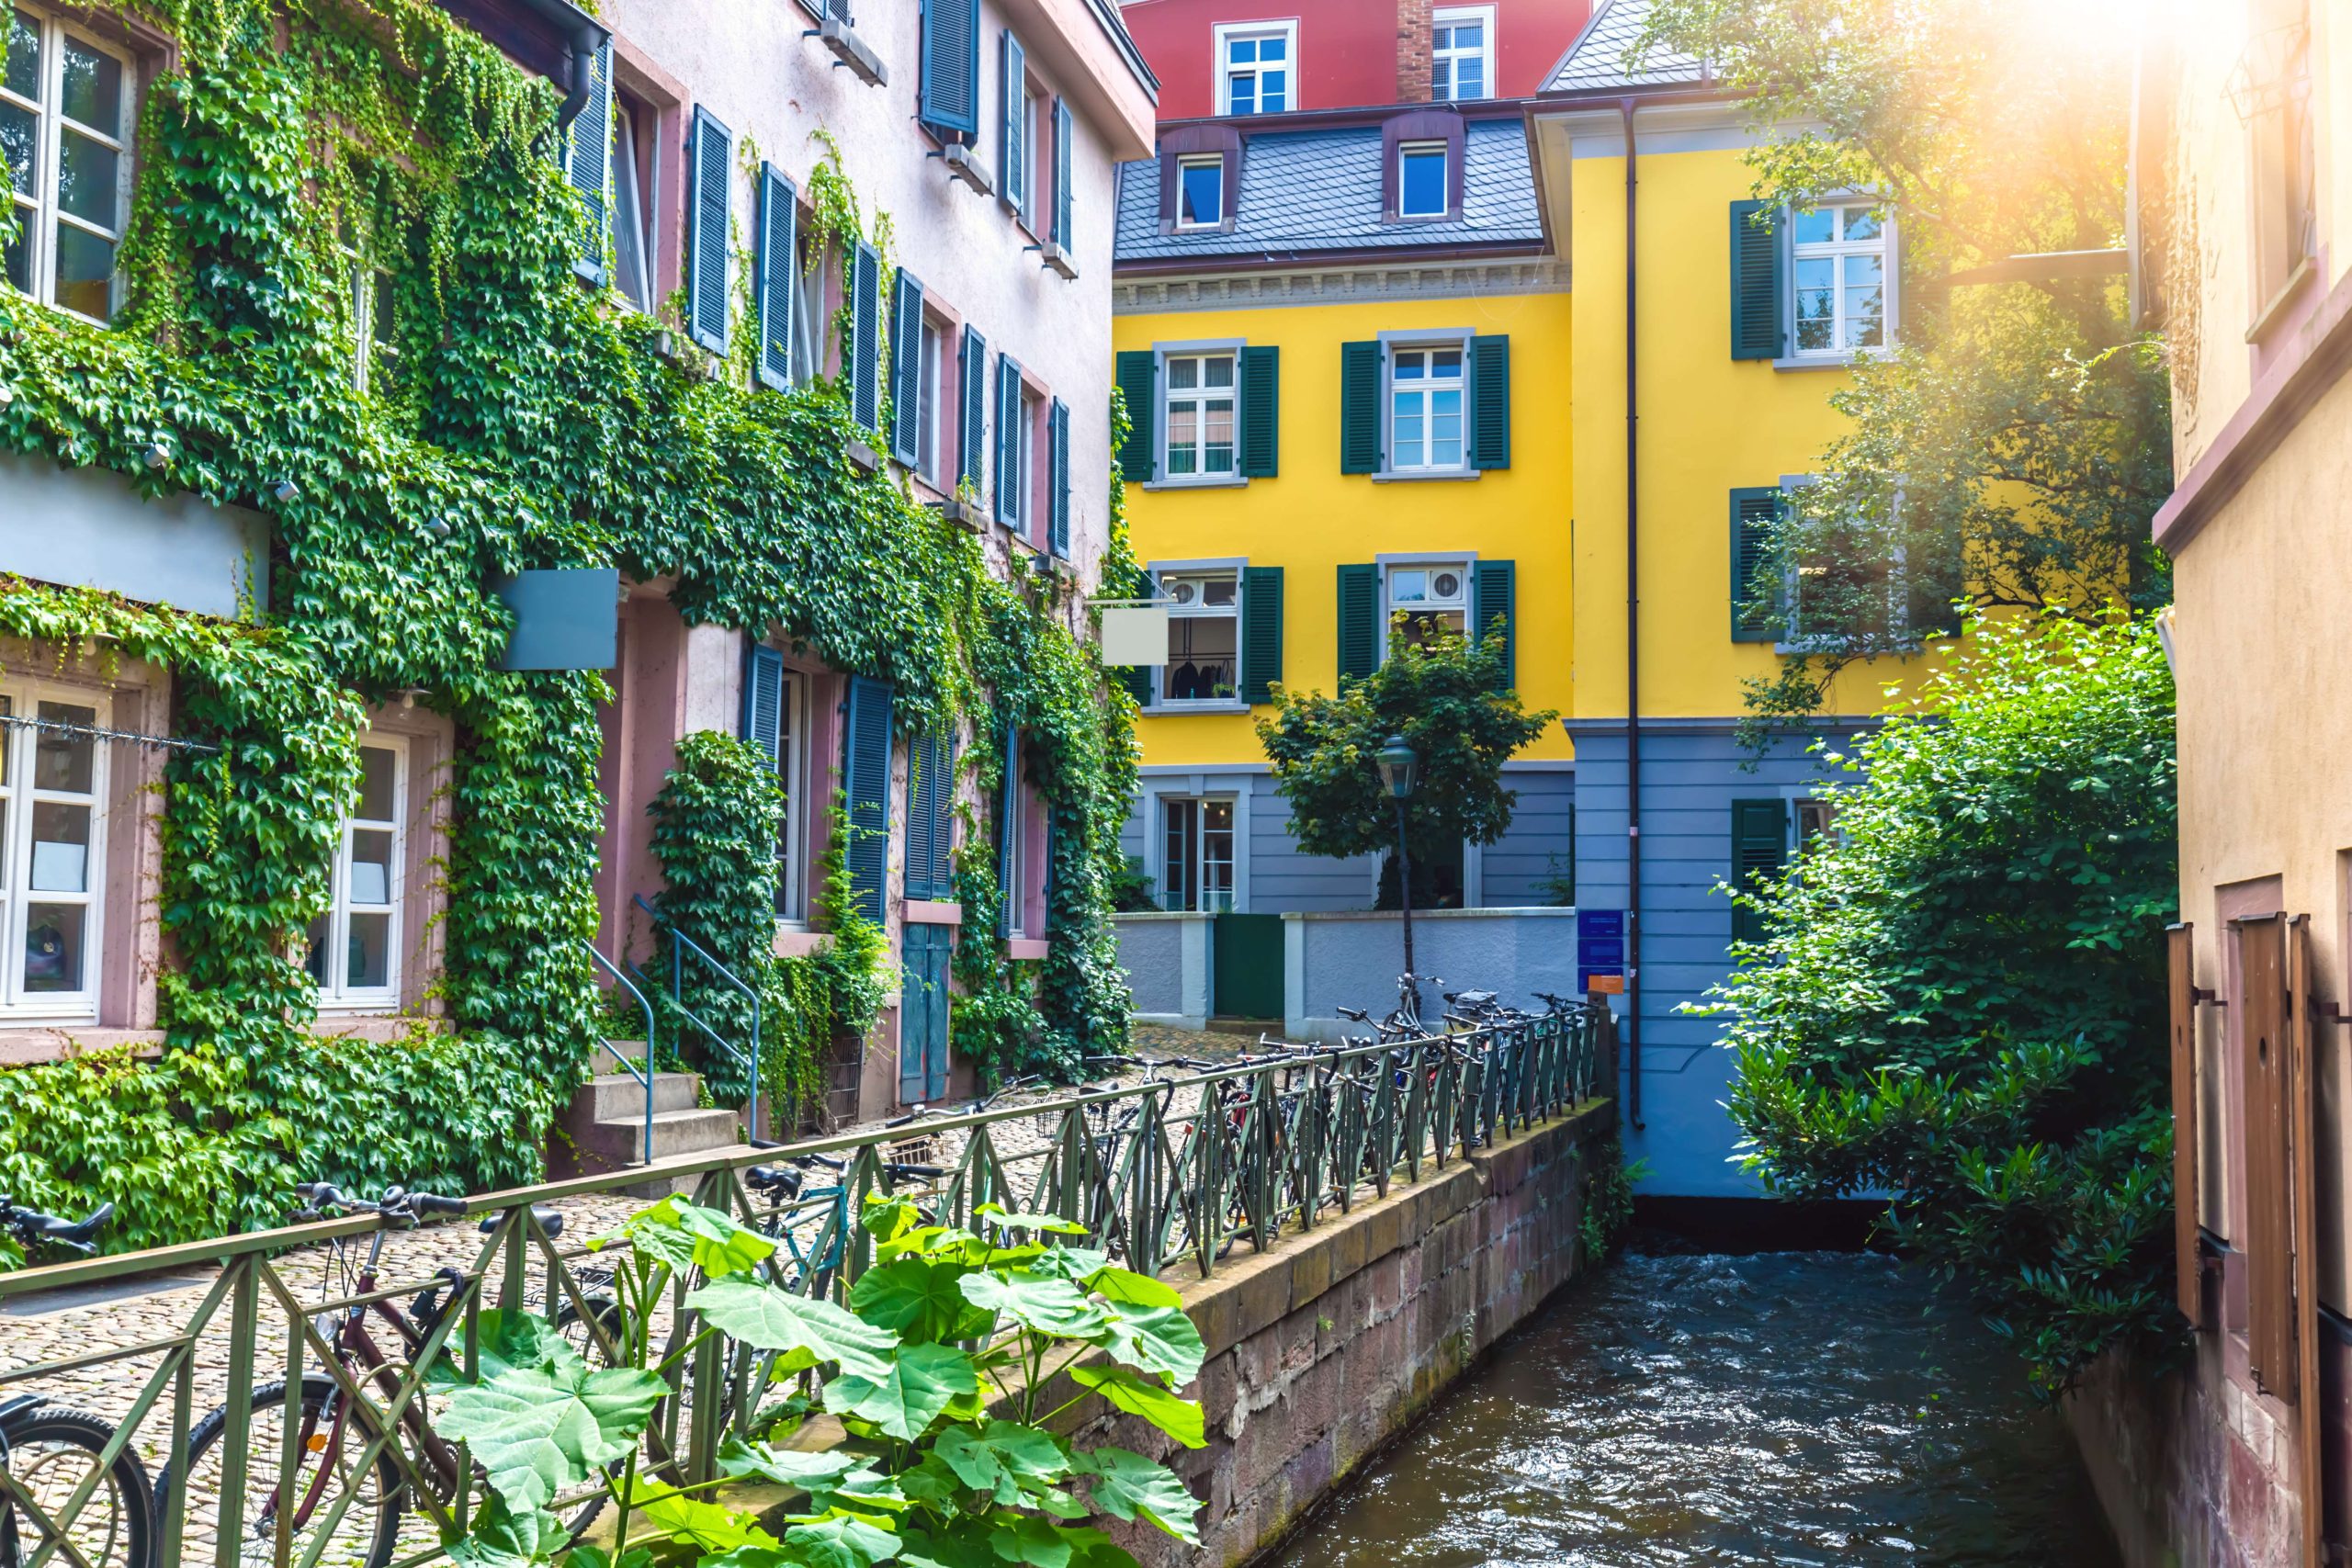 Klein Venedig - so wird die beliebteste Altstadt-Gasse in Freiburg zwischen dem Schwabentor und dem Martinstor gerne genannt. 